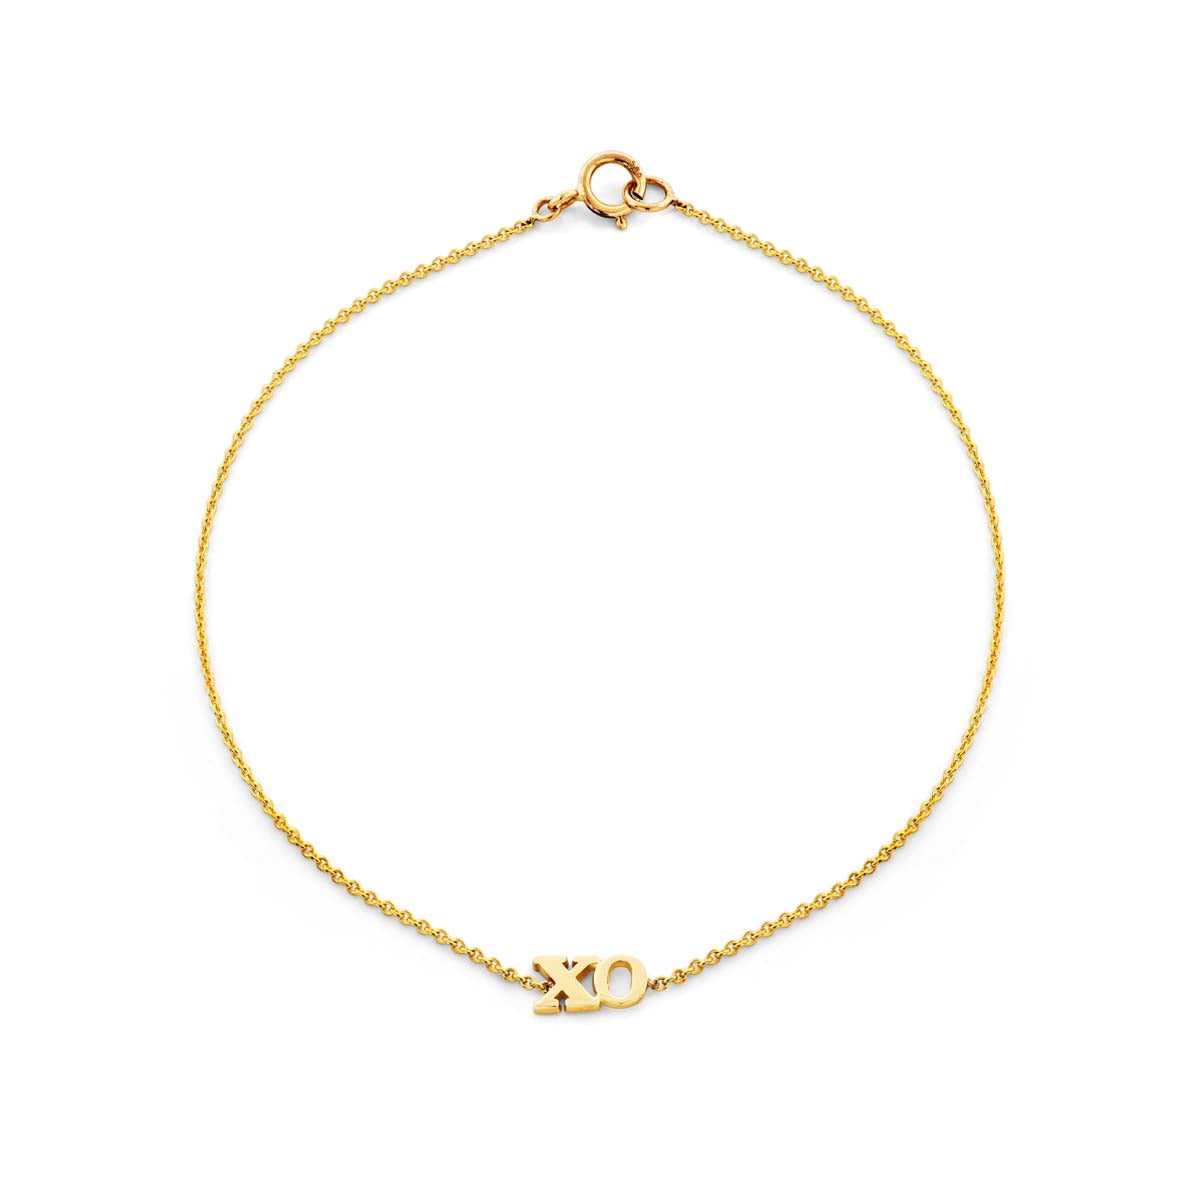 gold xo bracelet prb 046 14ky